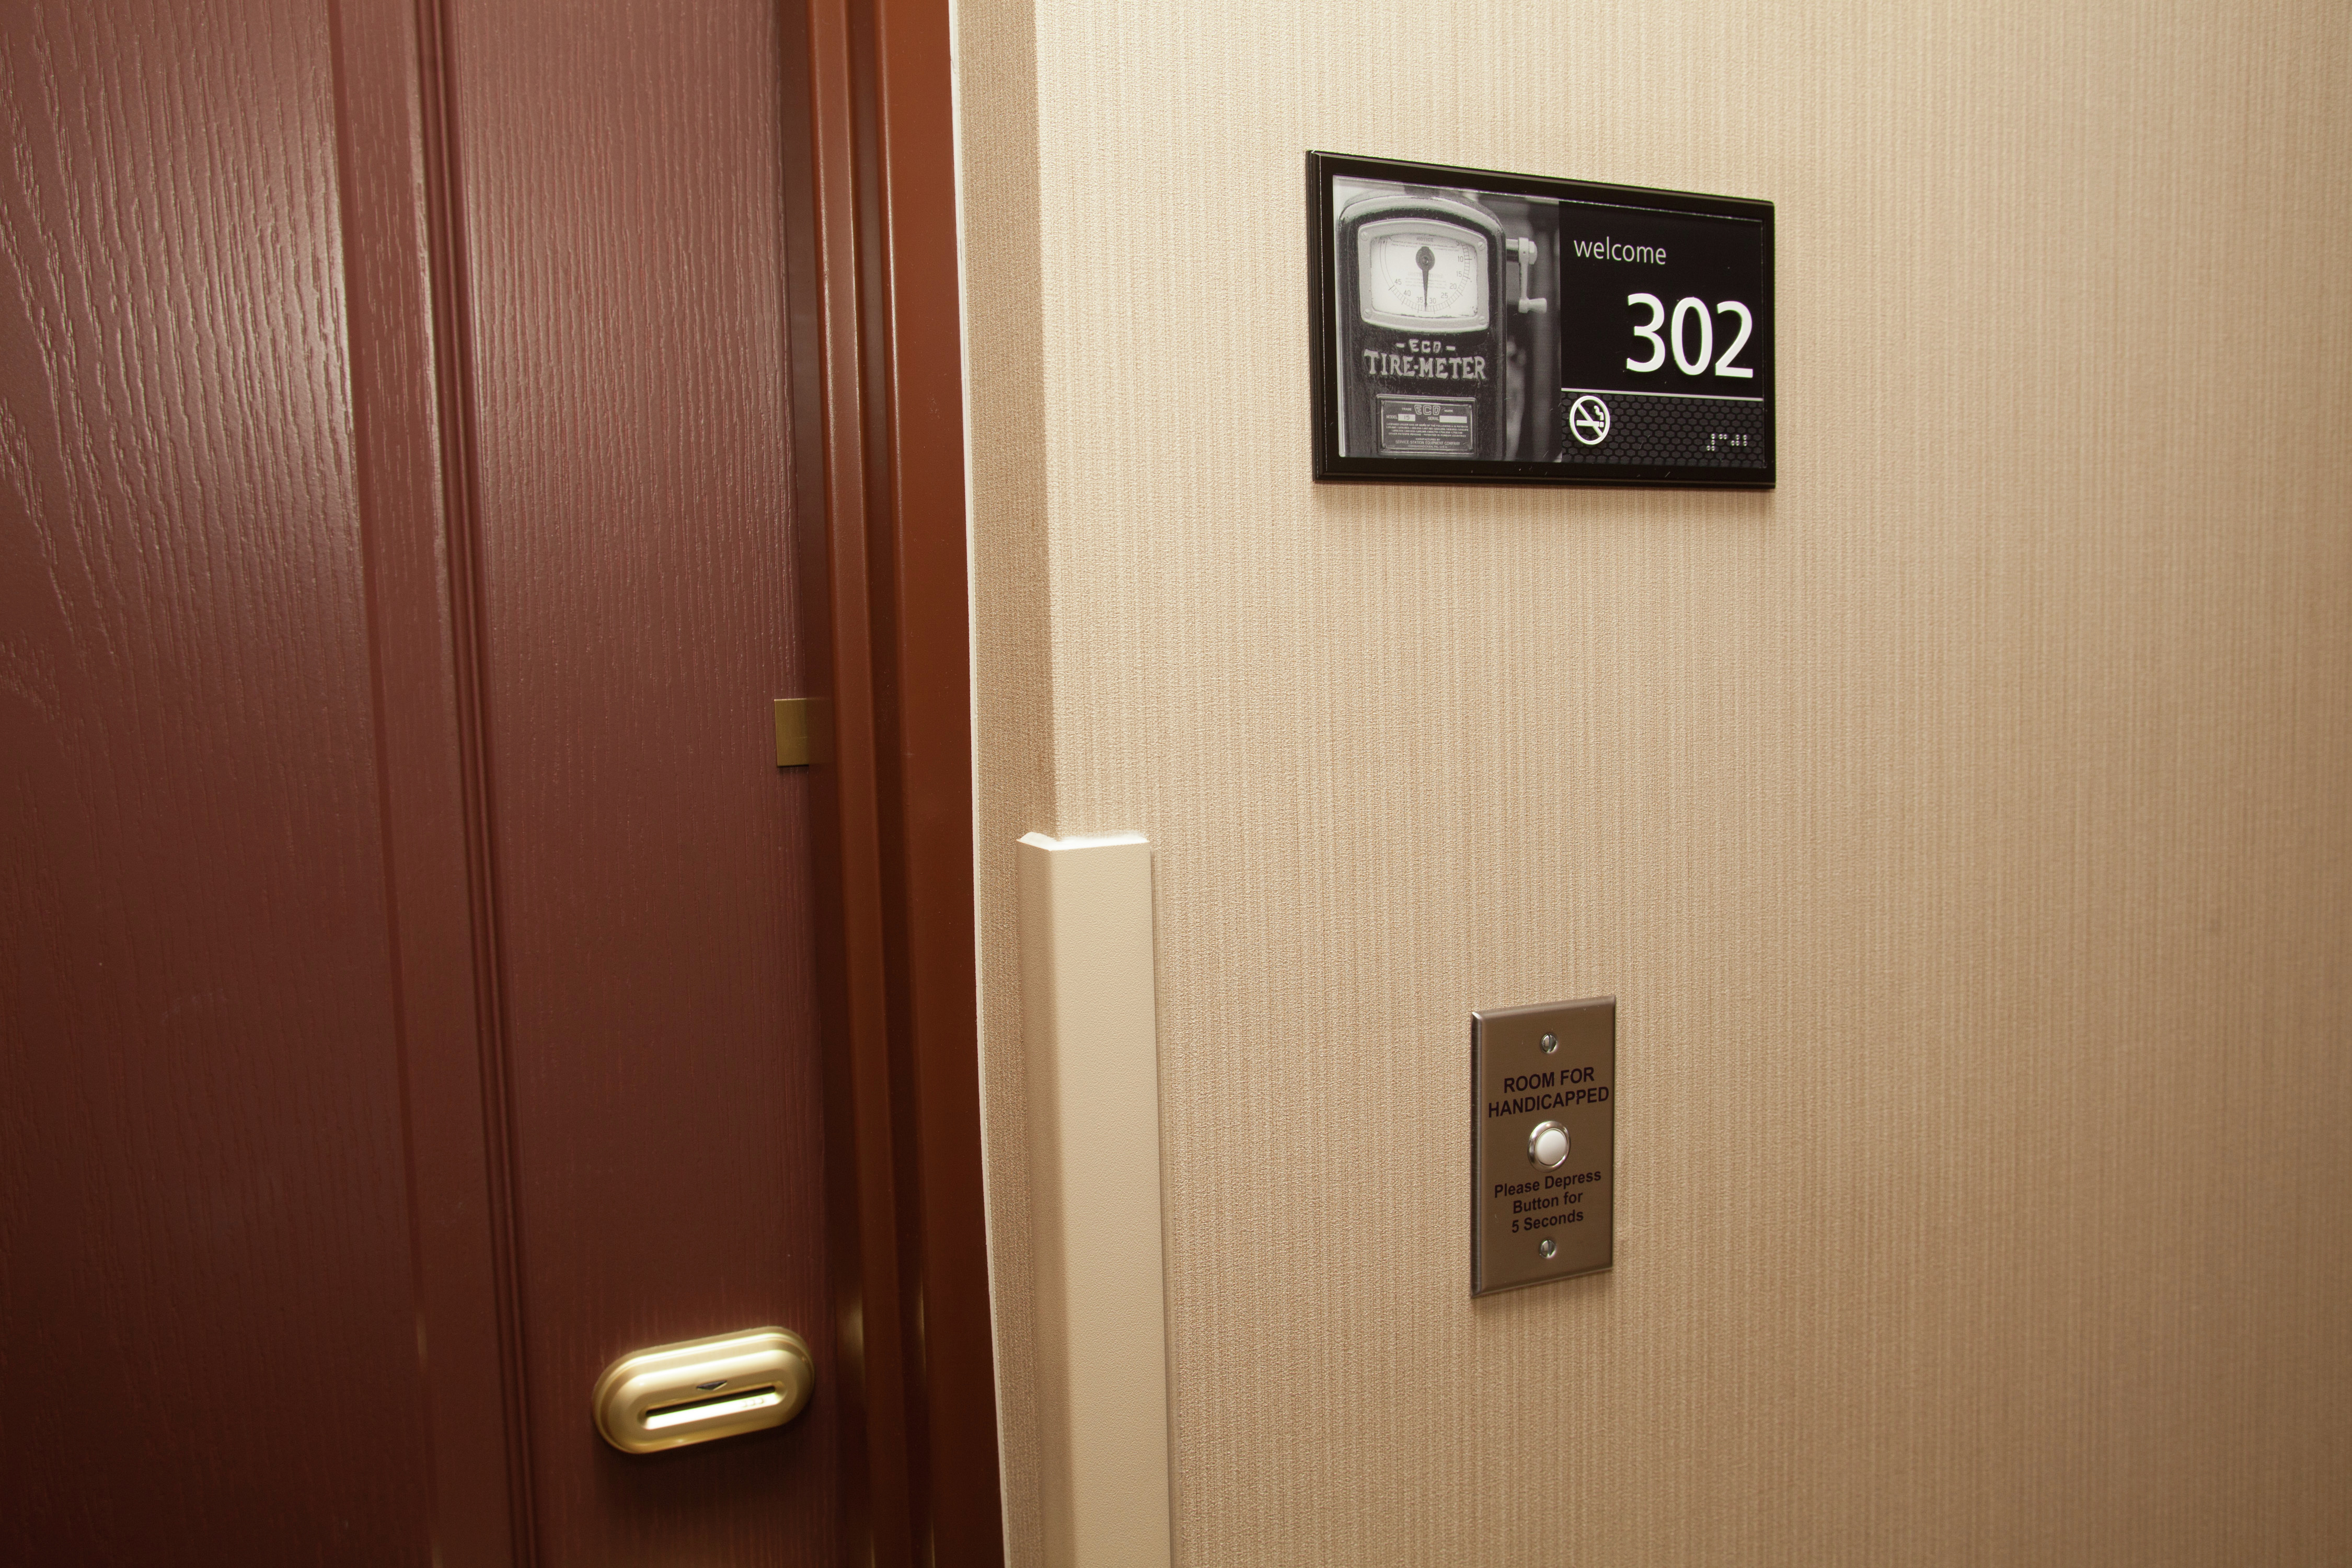 Accessible Guest Room Doorbell, Audio and Strobe Alert